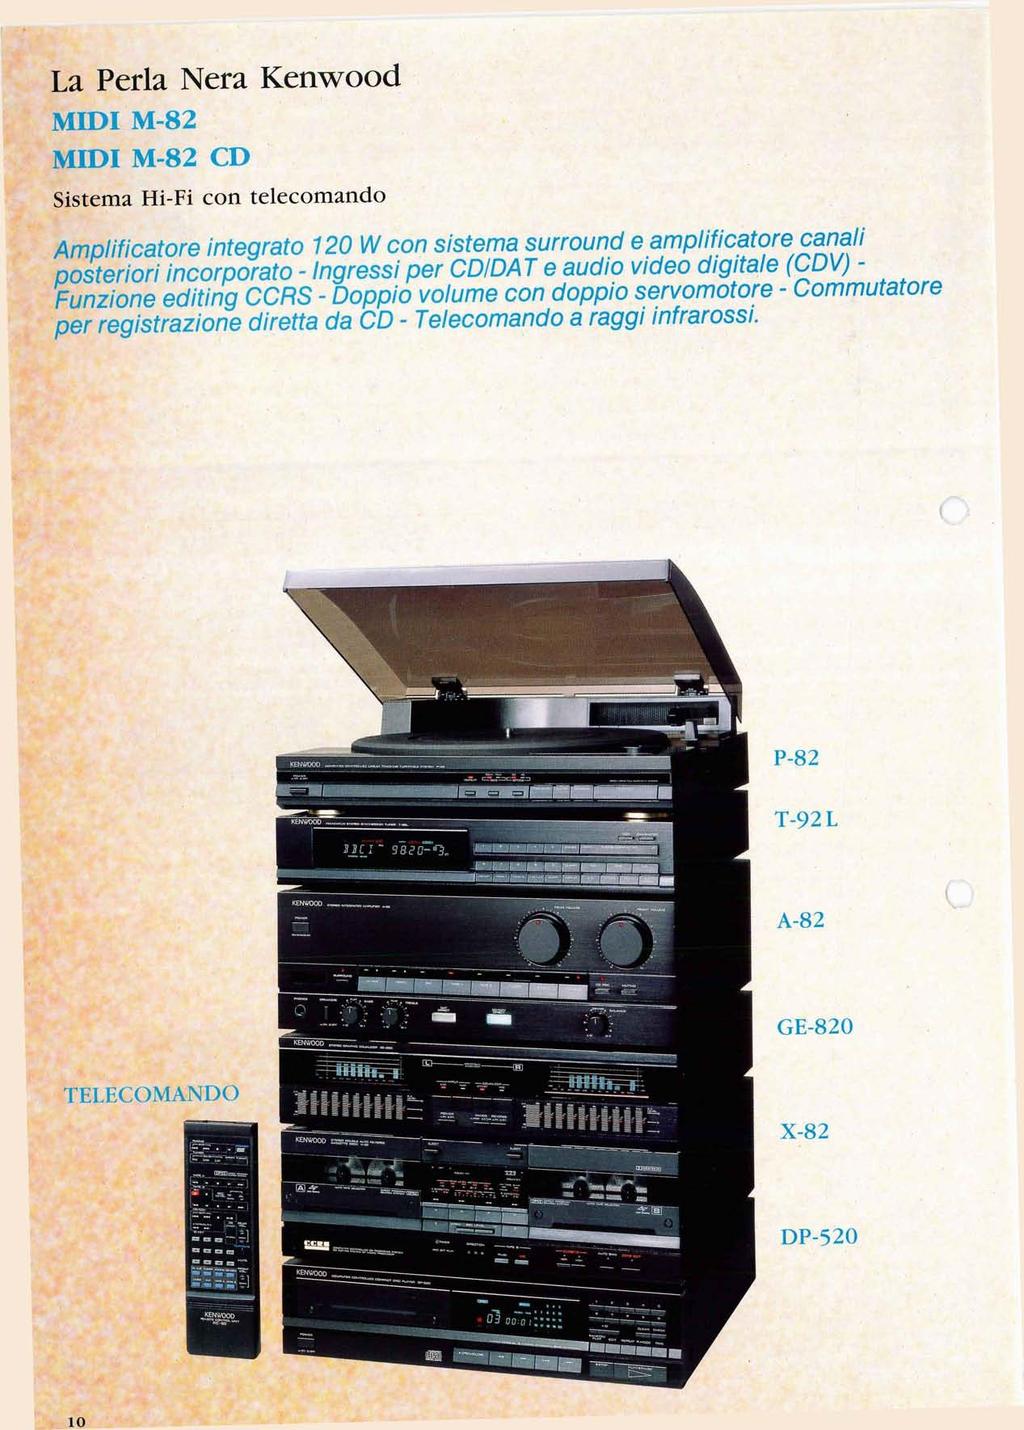 La Perla Nera Kenwood MIDI M-82 MIDI M-82 CD Sistema Hi-Fi con telecomando Amplificatore integrato 120 W con sistema surround e amplificatore canali posteriori incorporato - Ingressi per CD/DAT e